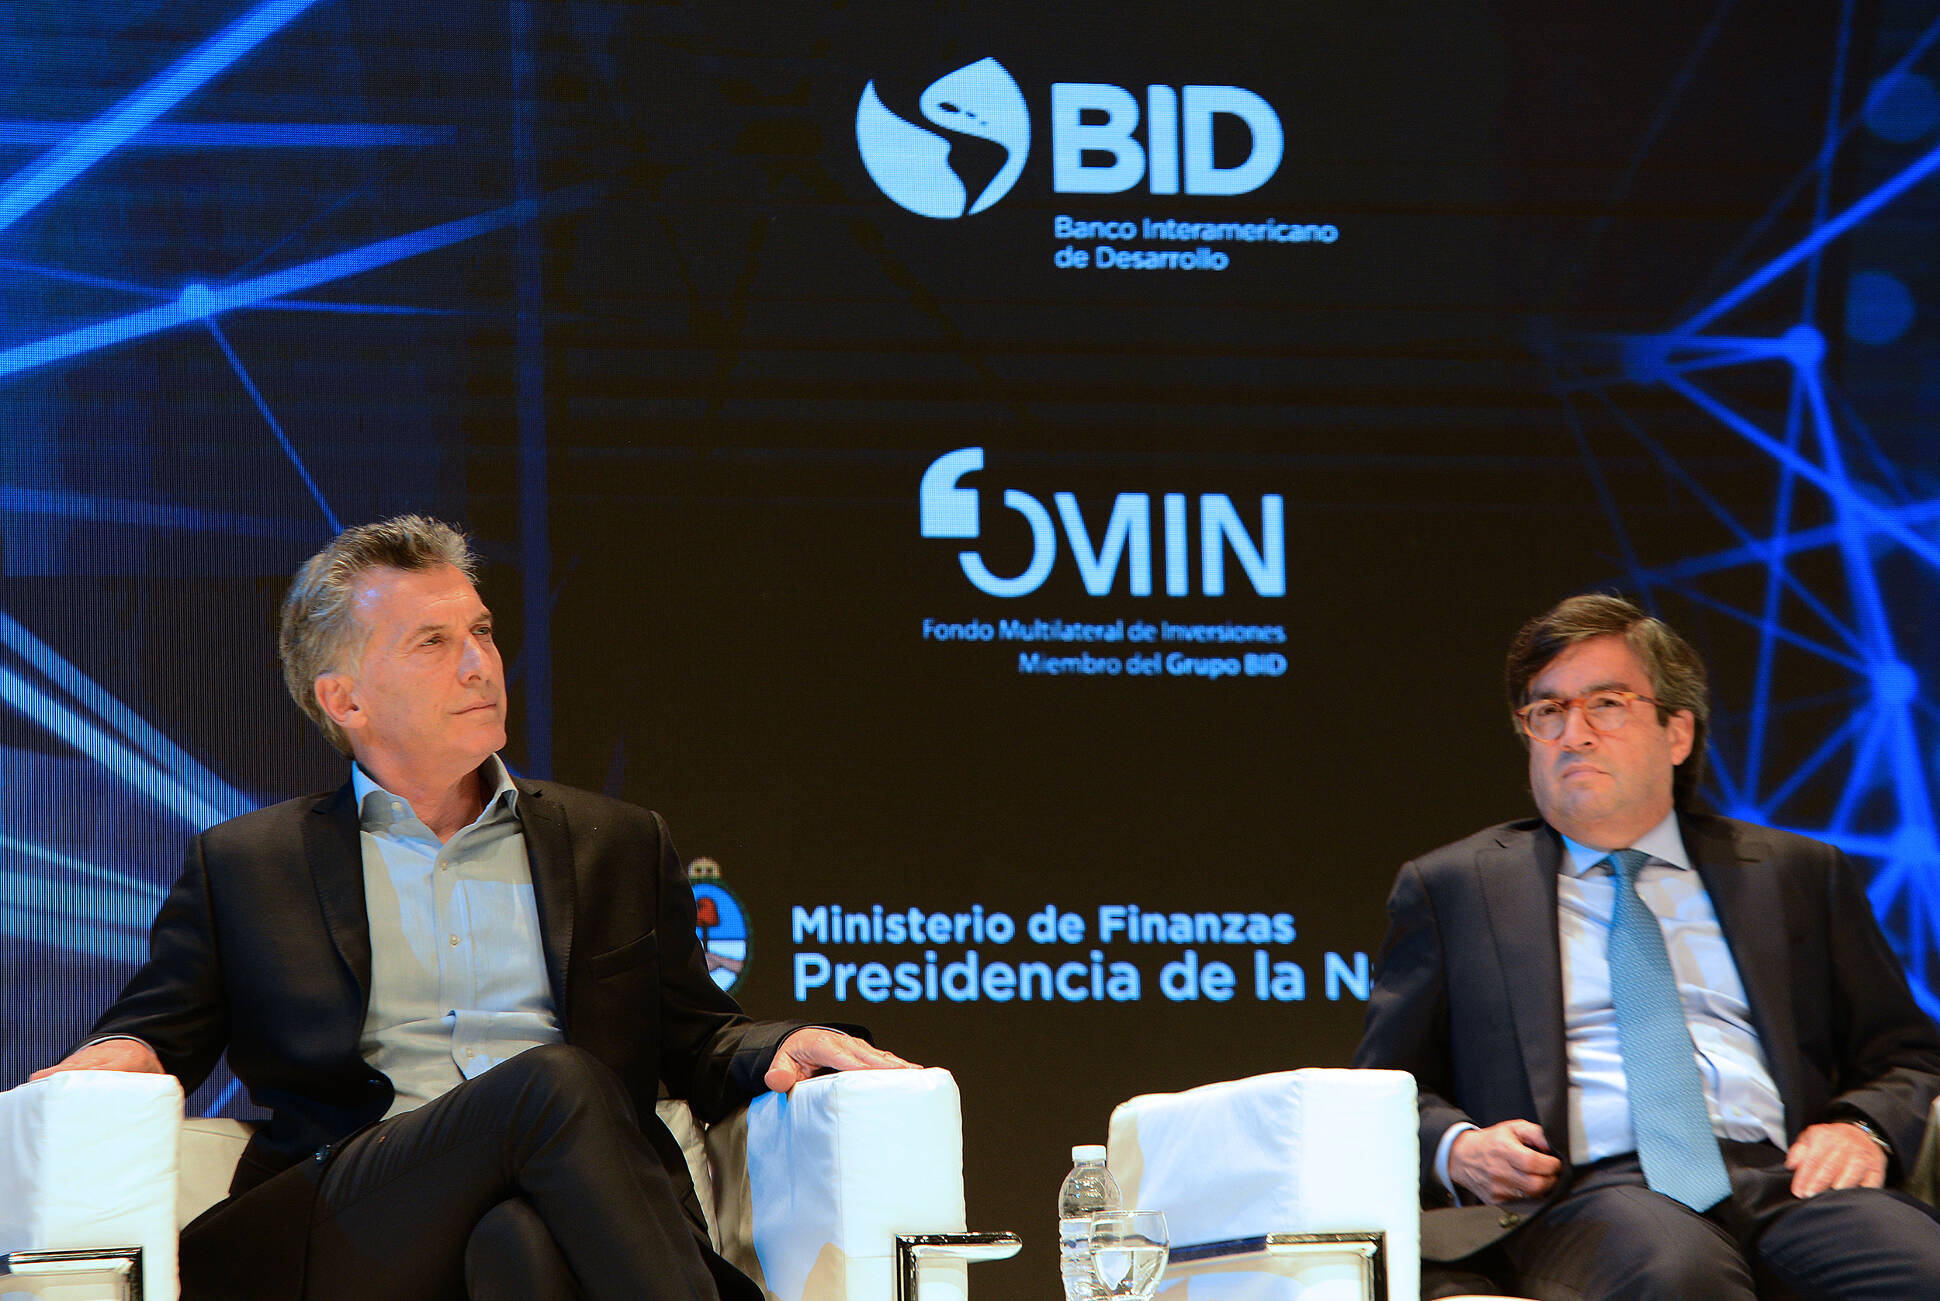 Macri abogó en favor de ampliar los niveles de inclusión financiera